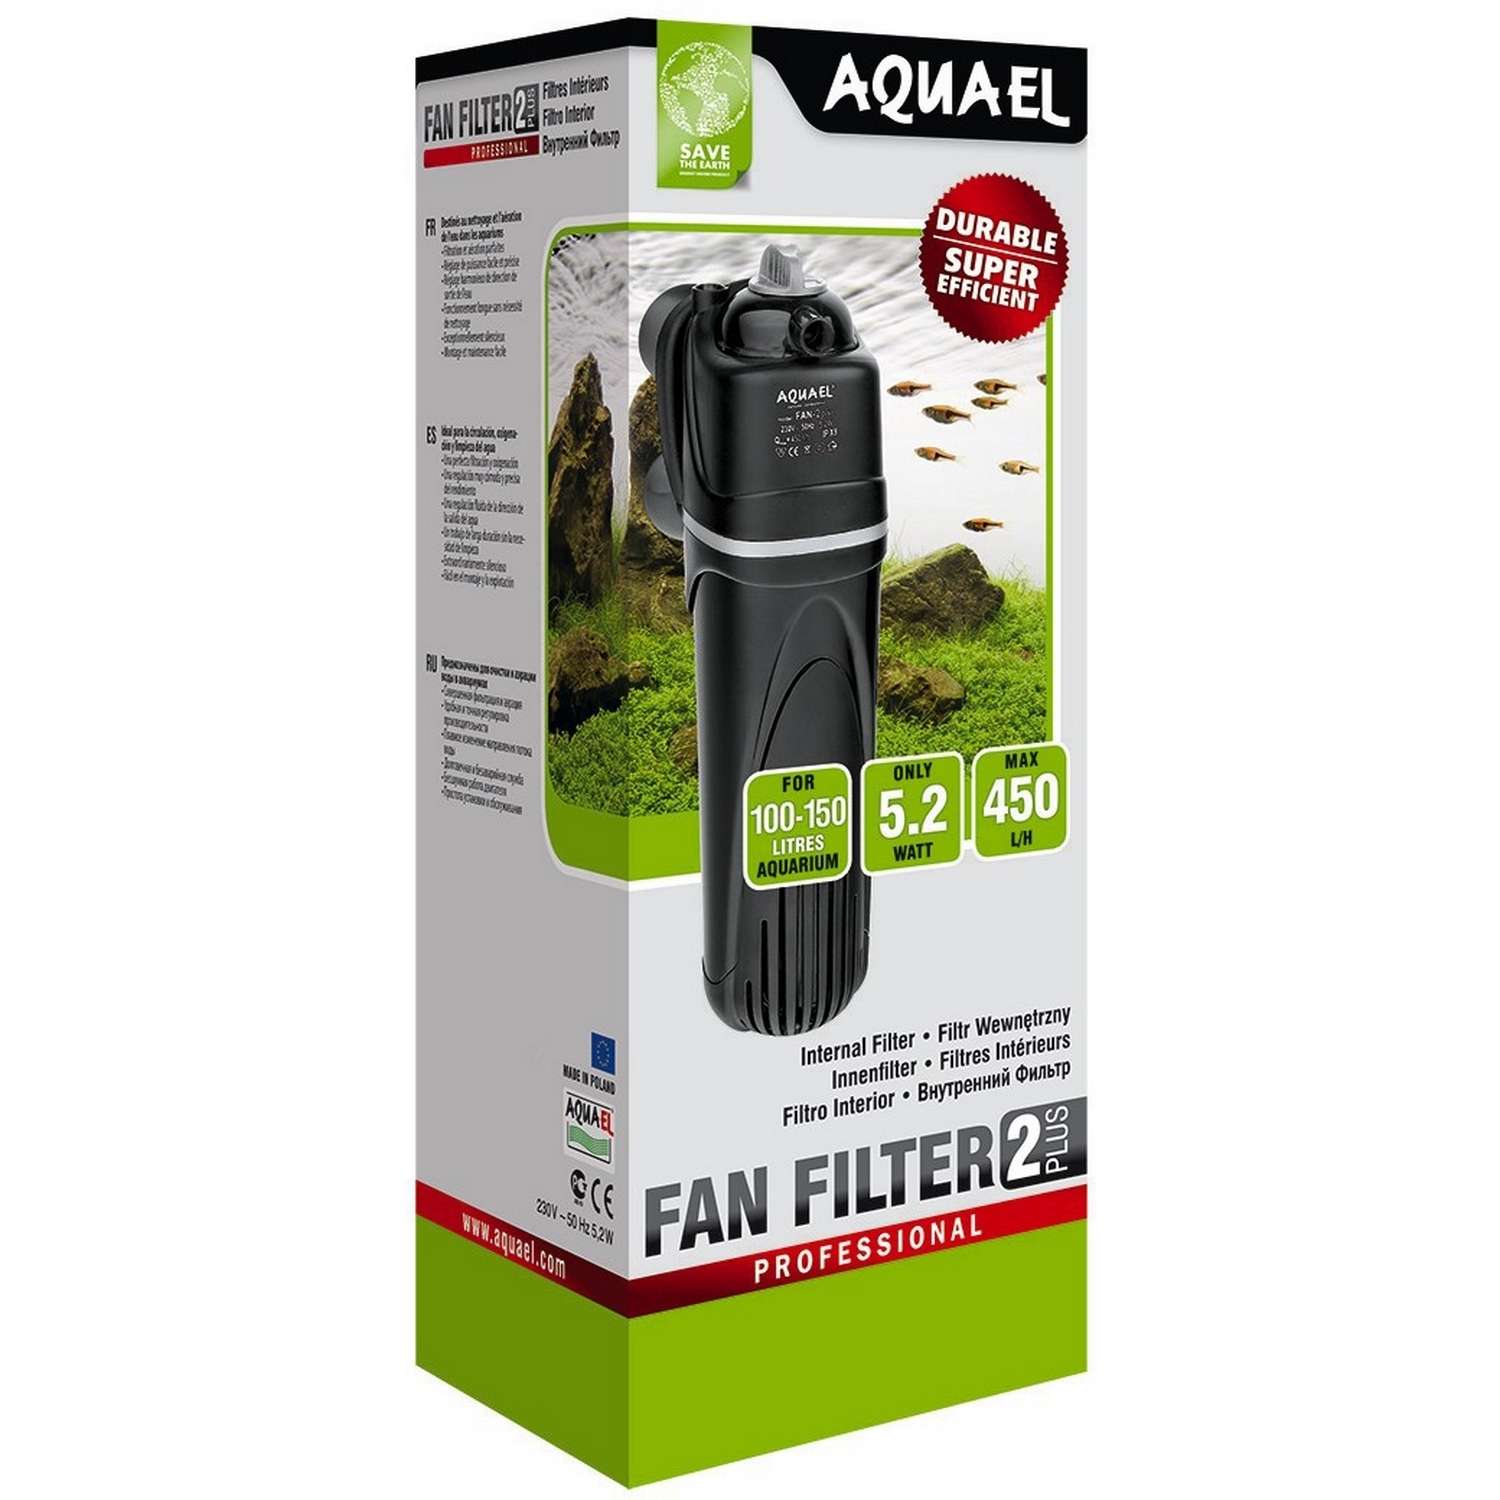 Фильтр для аквариумов AQUAEL Fan Filter 2 plus внутренний 102369 - фото 2